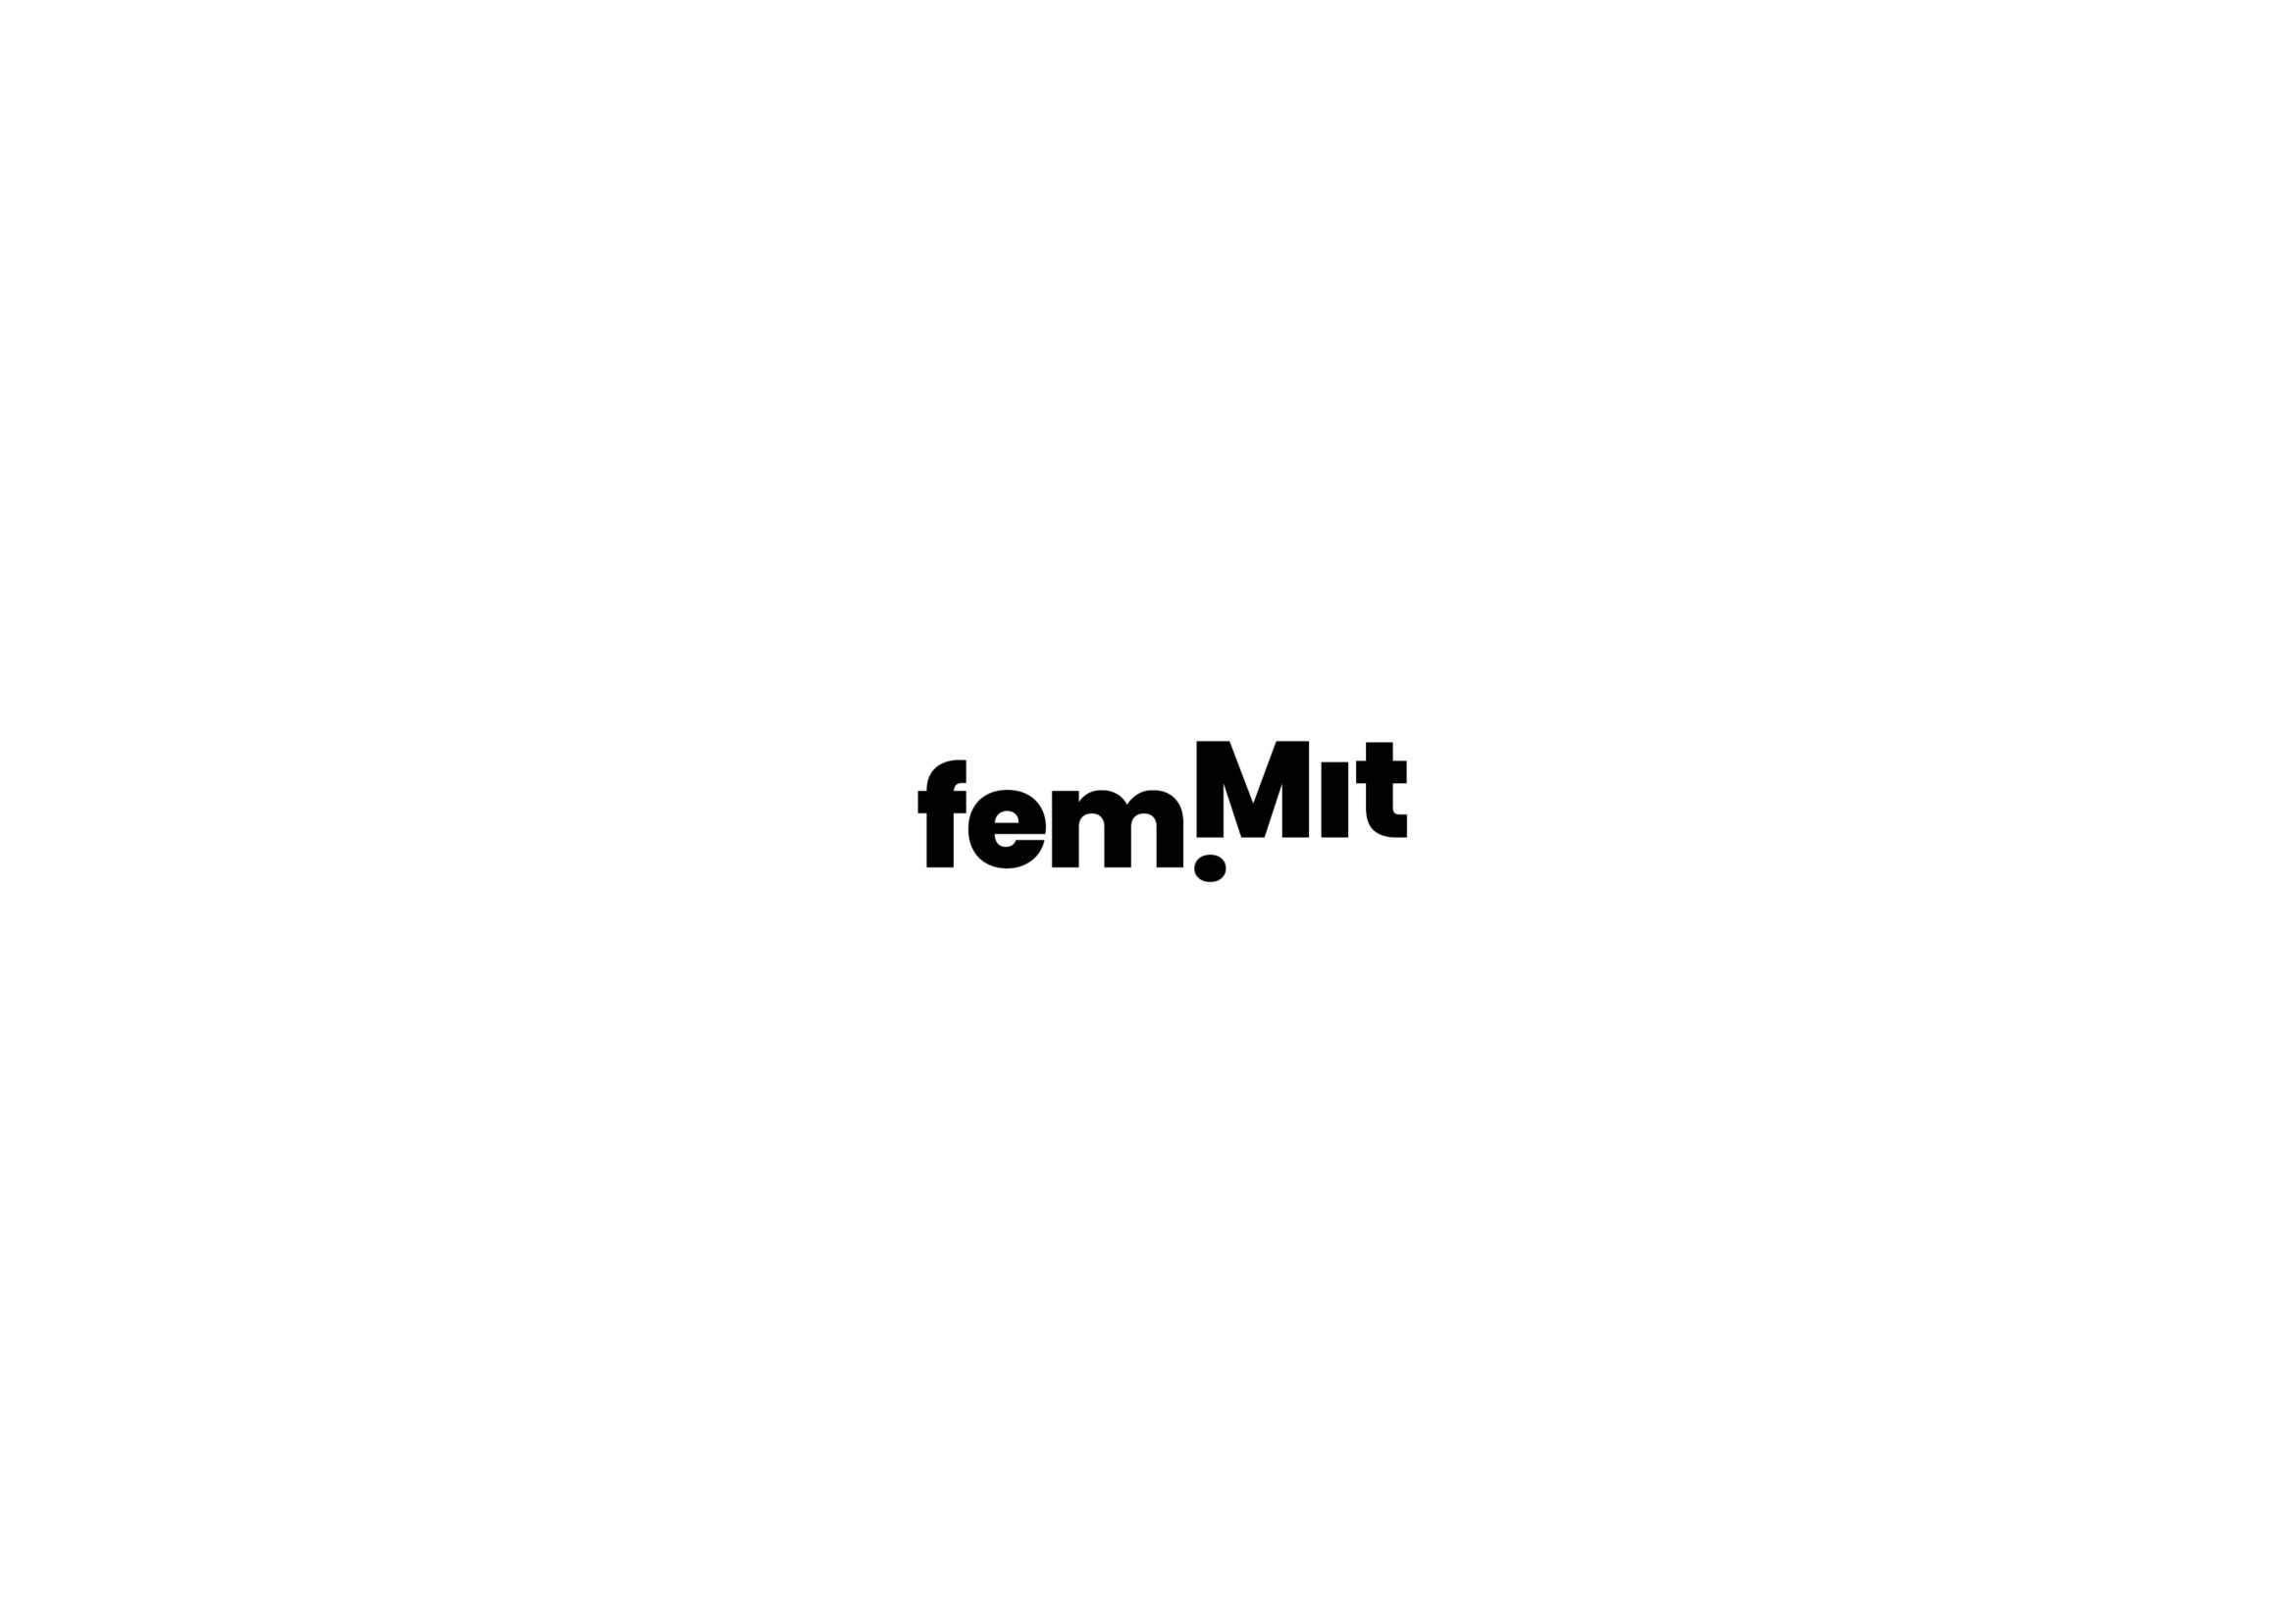 Wort Marke| Logo | Frauenrechte | Politik | Vorbild | Firmenzeichen